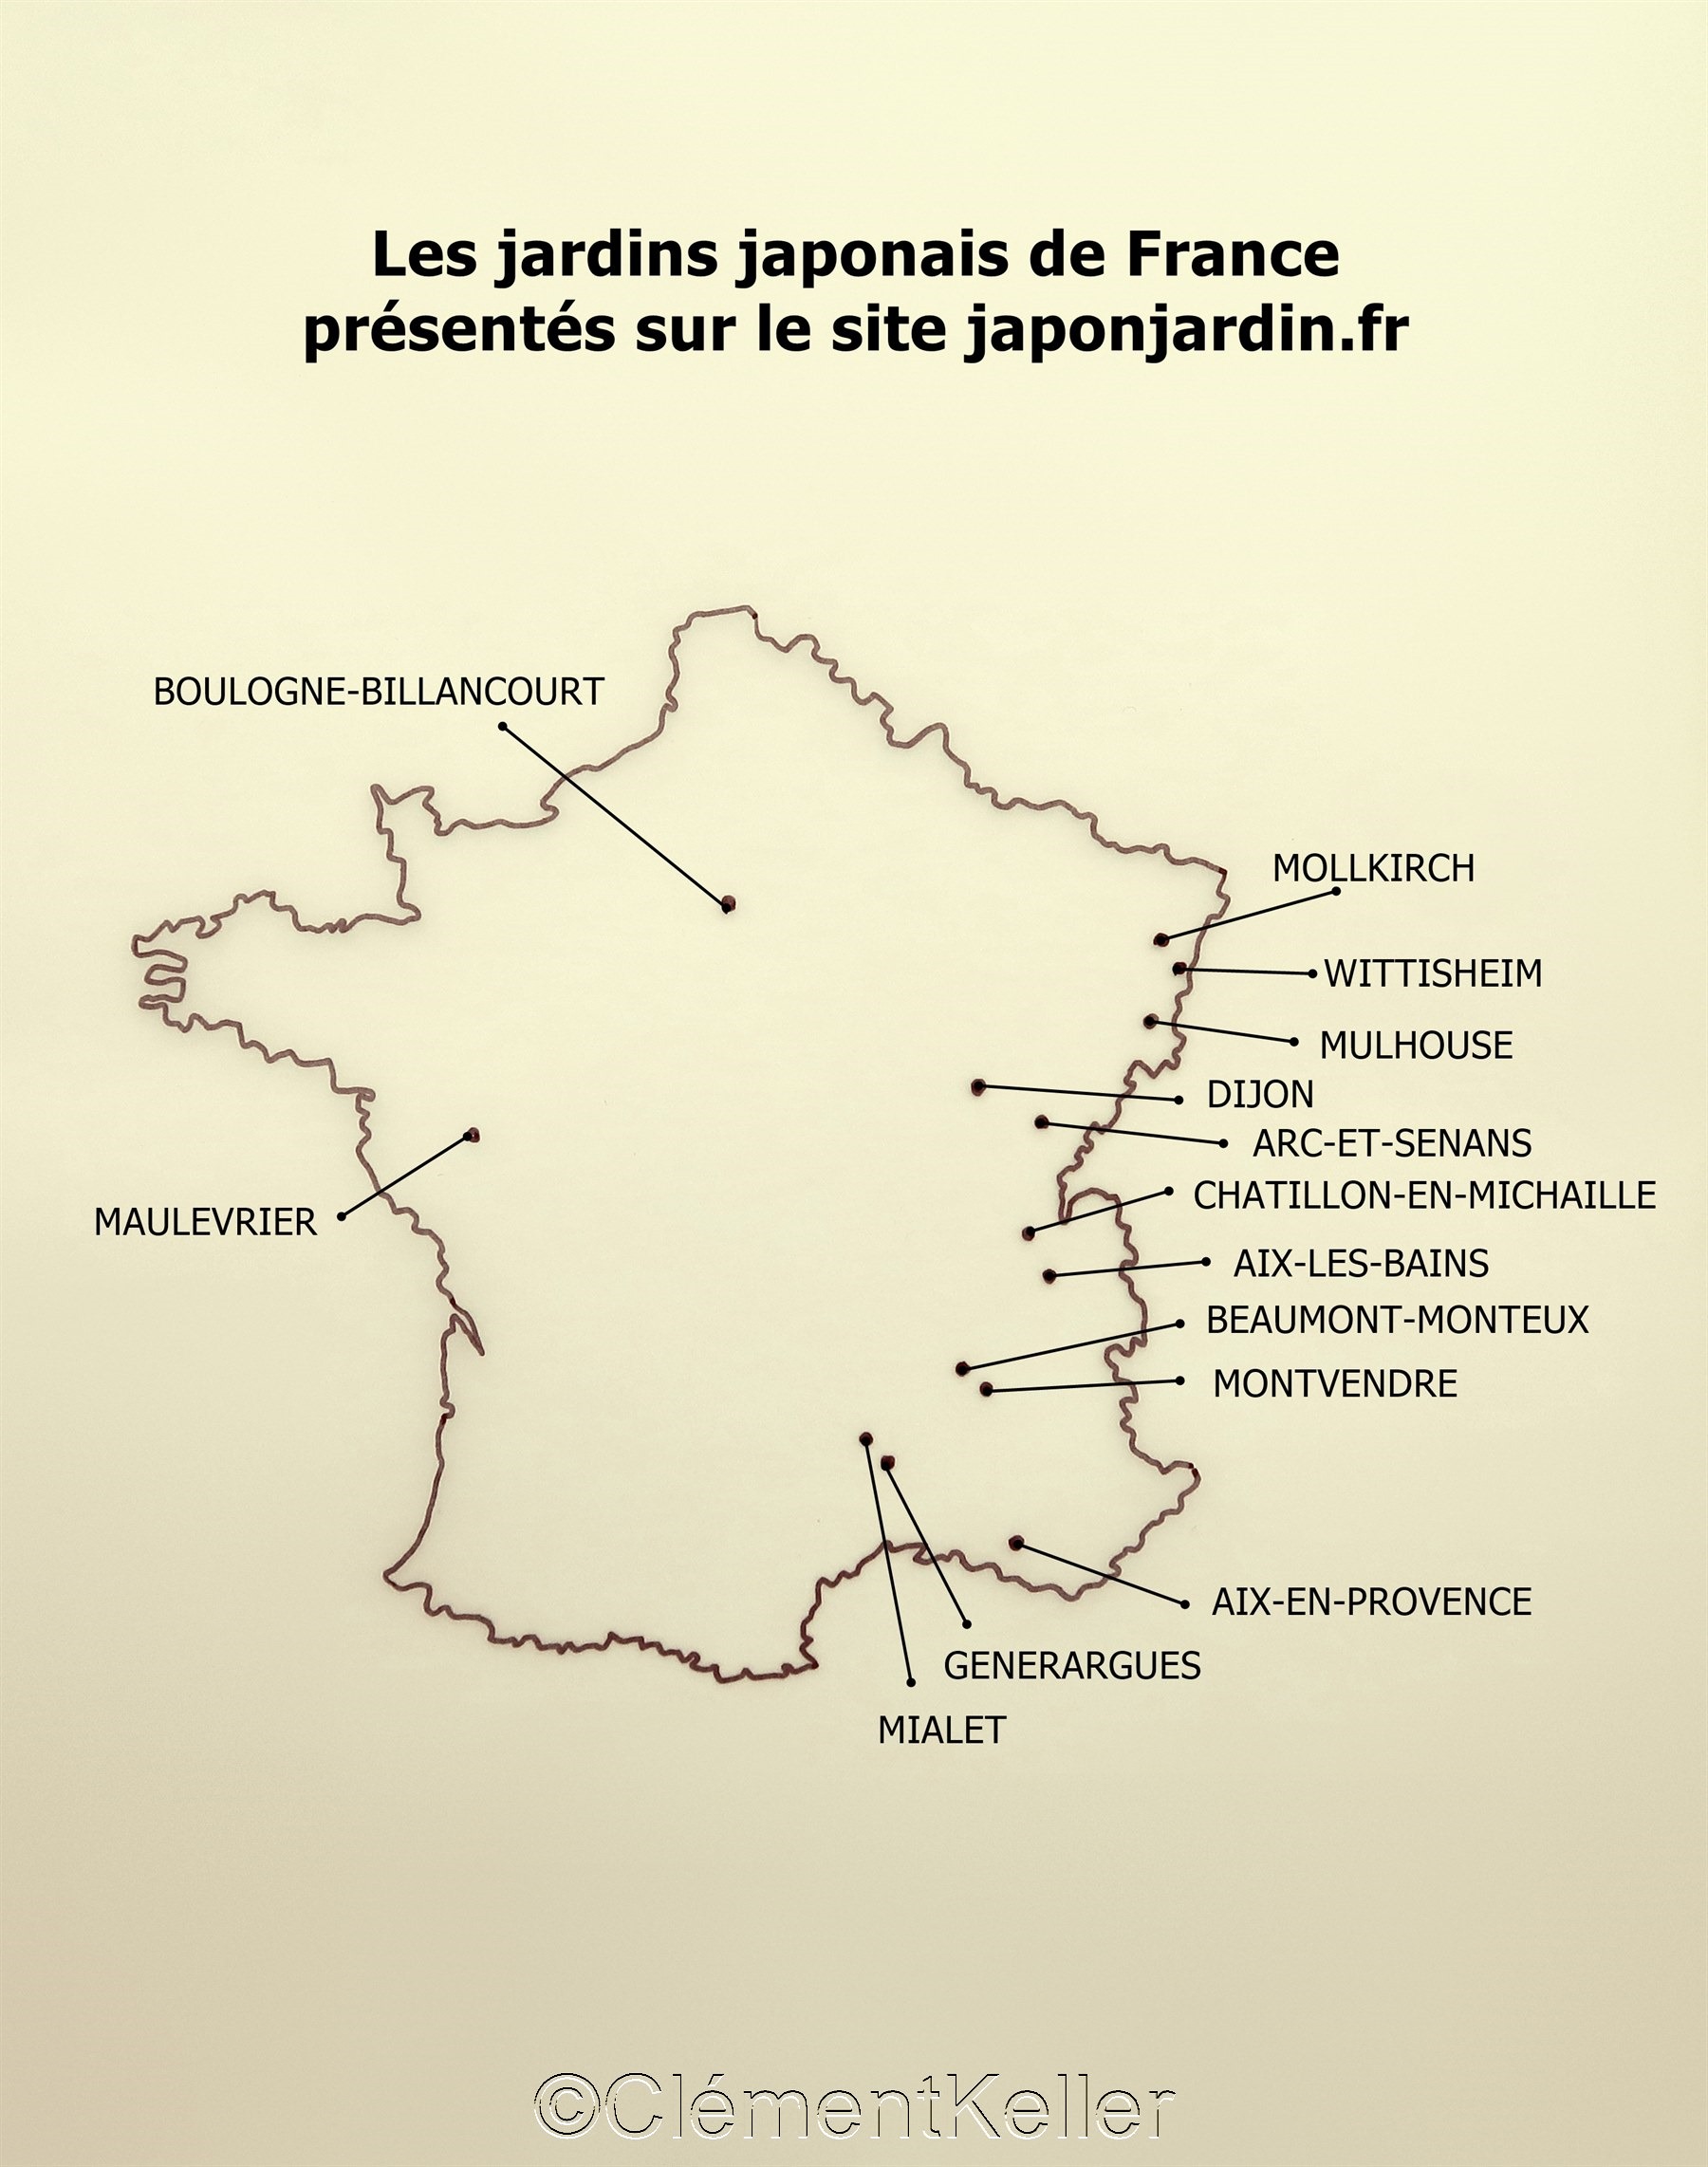 Carte des jardins japonais en France présentés sur le site internet japonjardin.fr